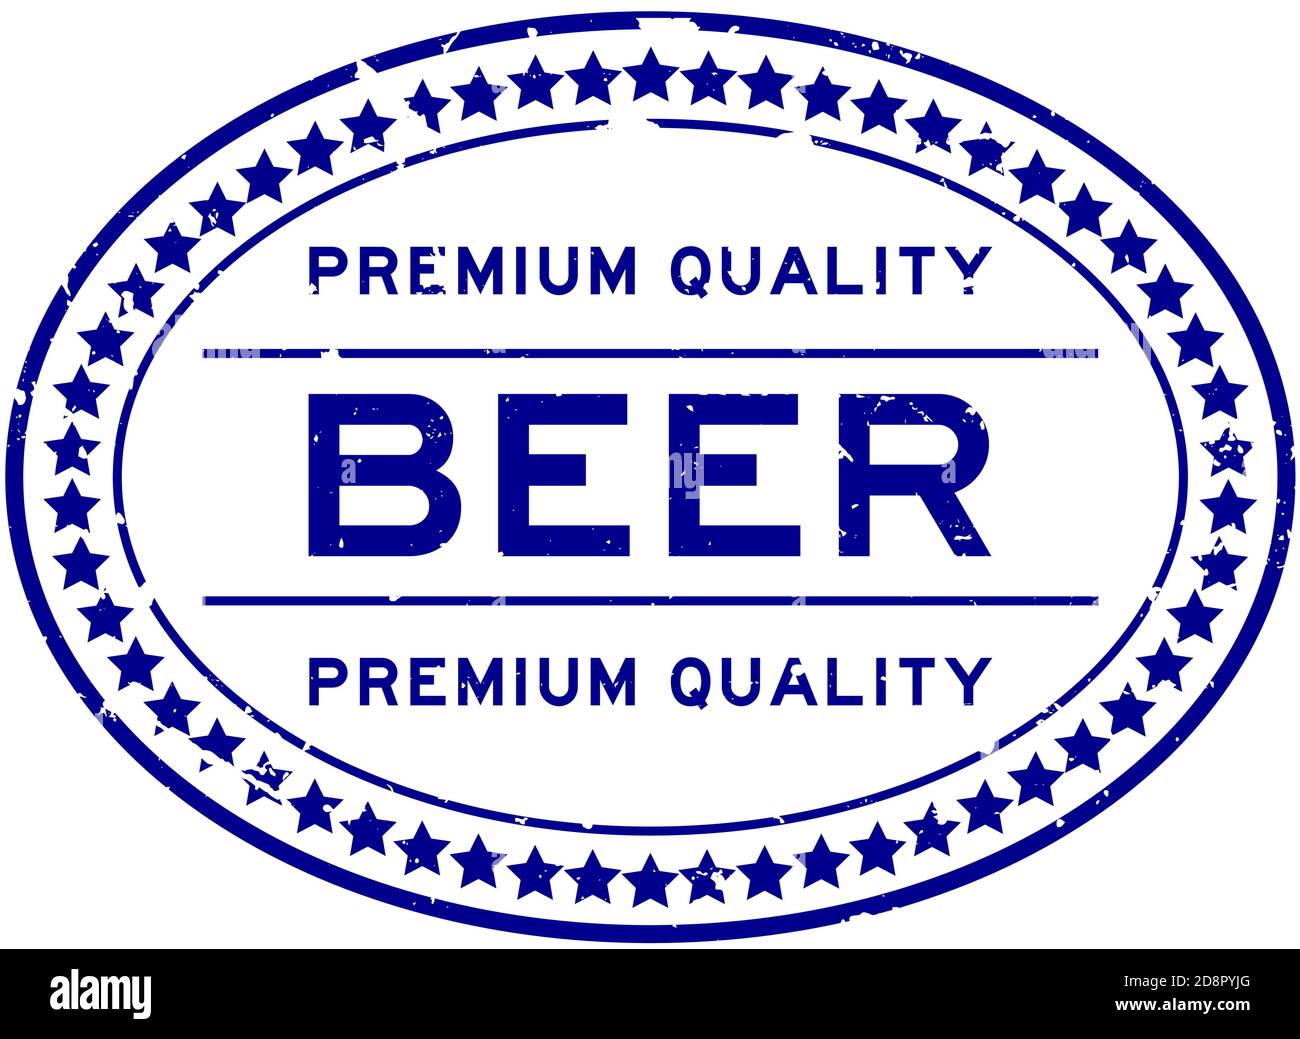 Grunge blau Premium-Qualität Bier Wort oval Gummi Siegel Stempel Auf weißem Hintergrund Stock Vektor